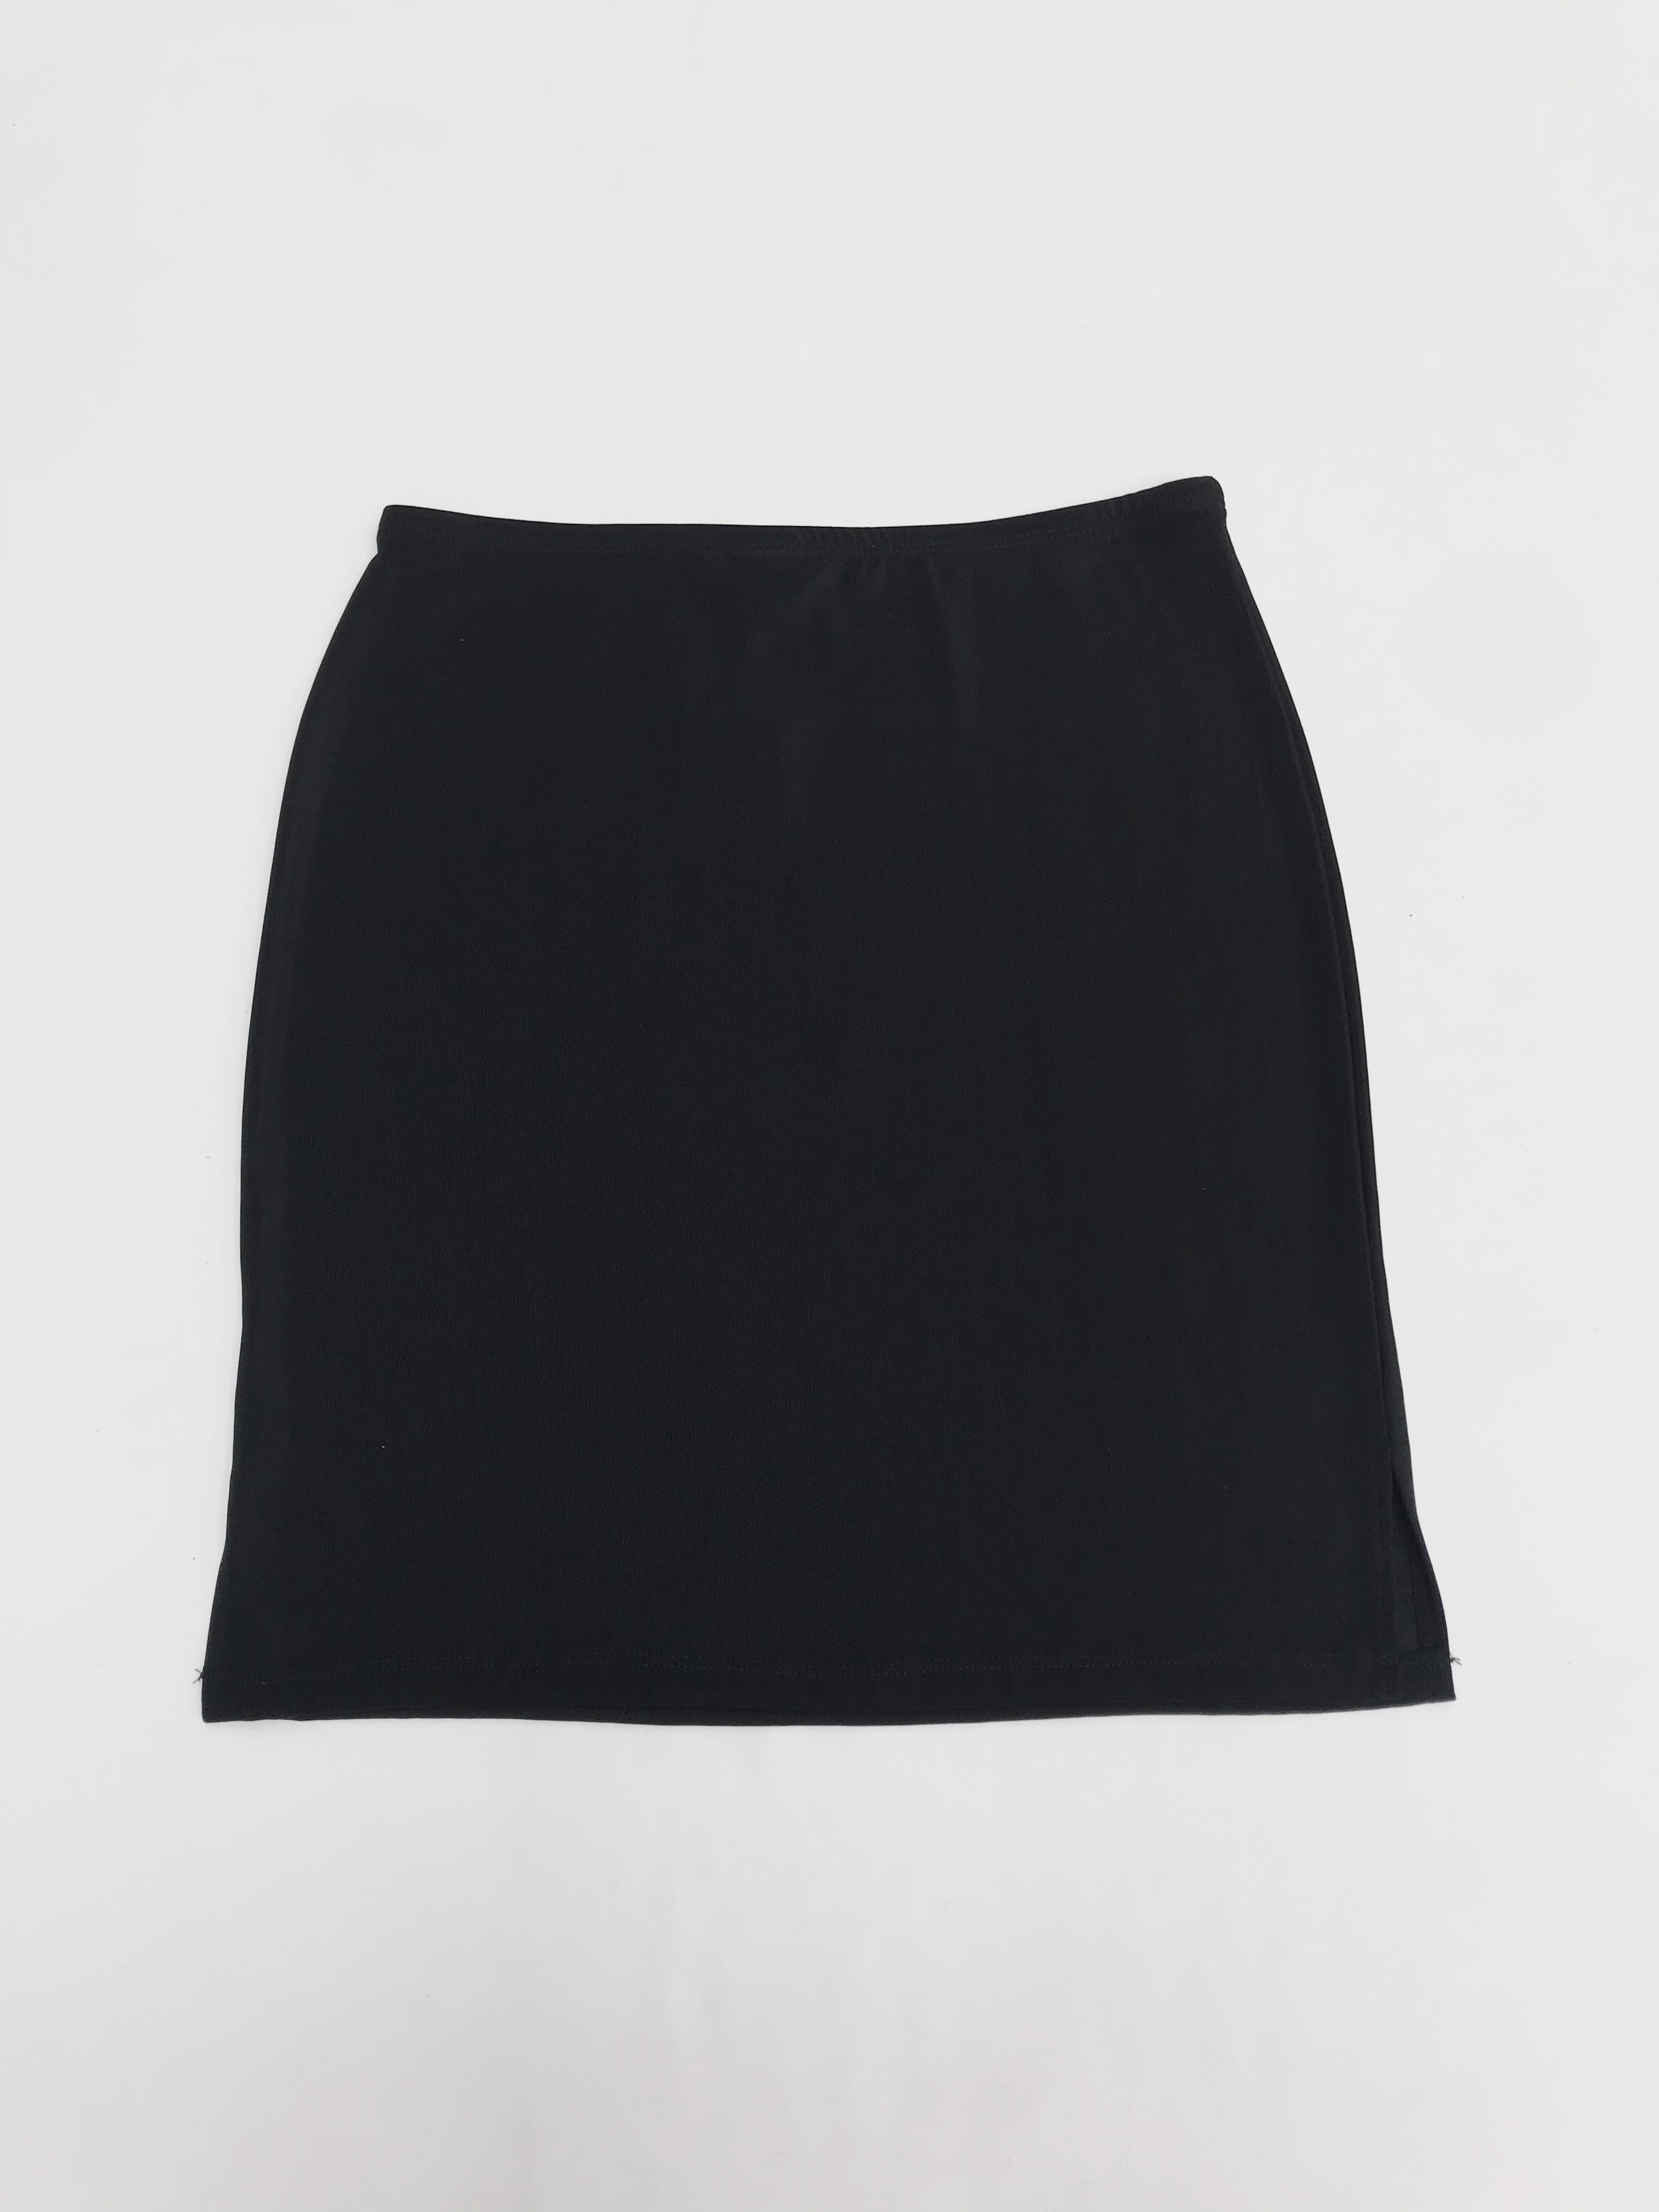 Falda negra stretch con textura de hilo. Largo 48cm
Talla S/M